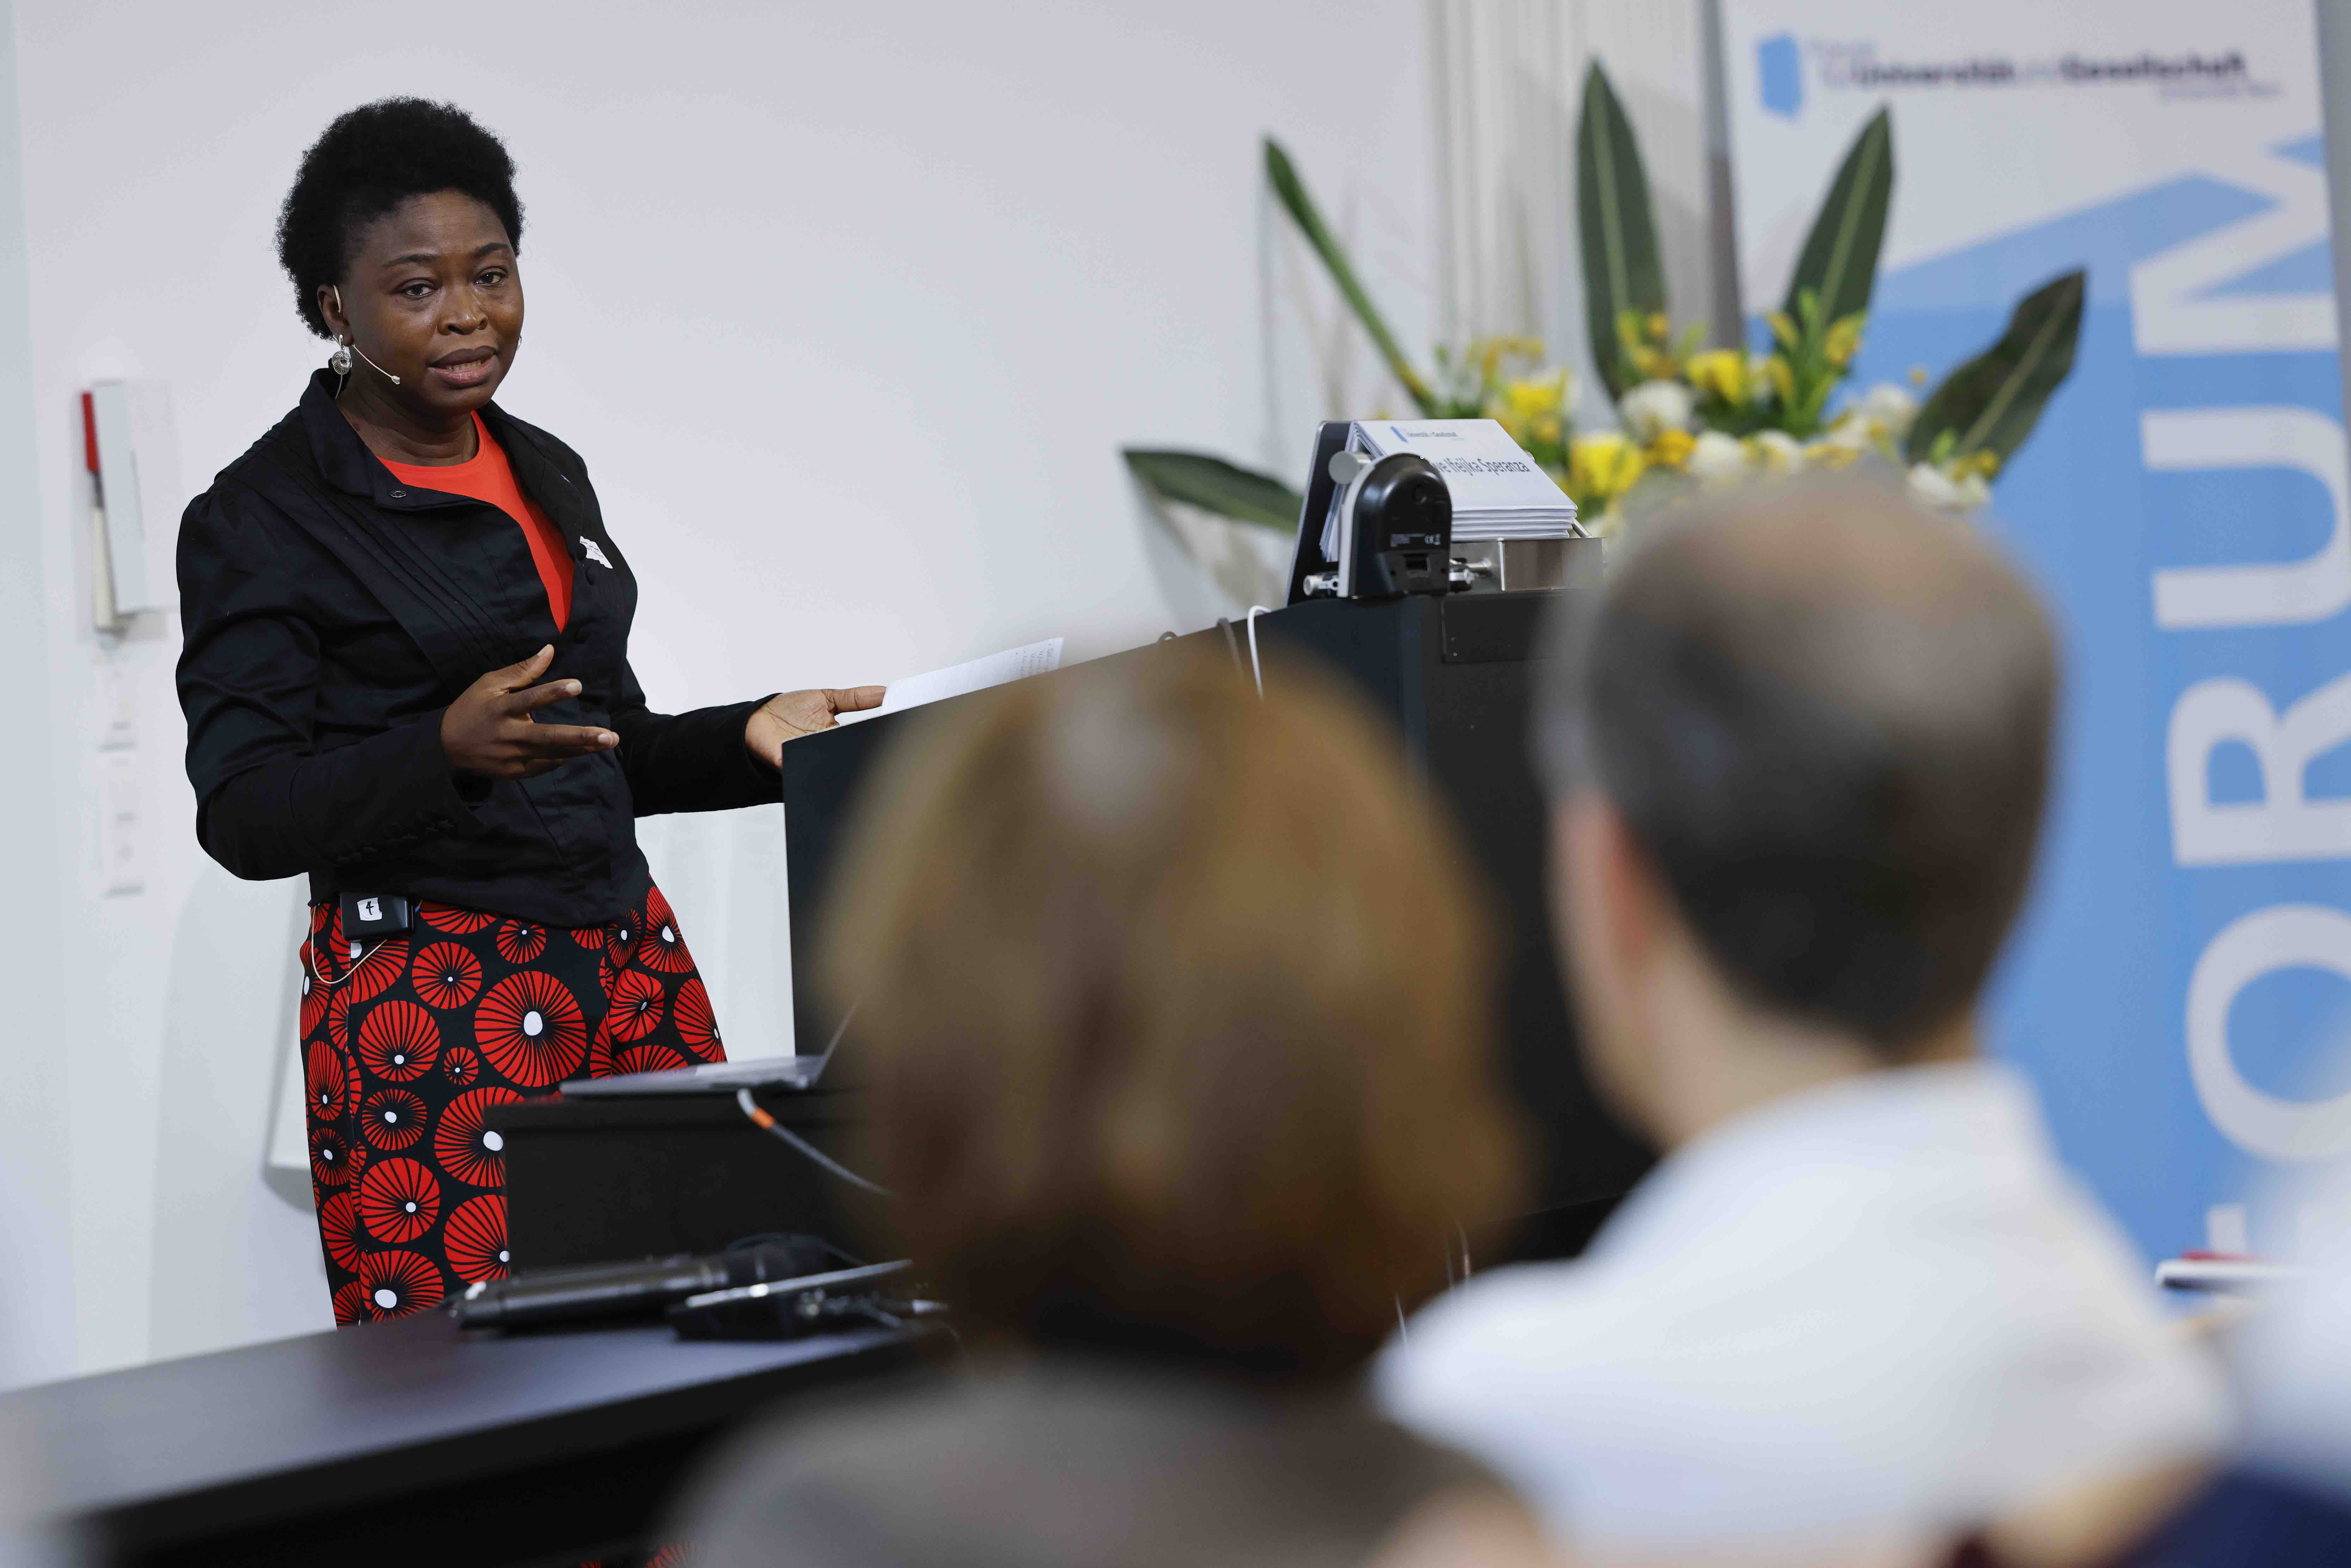 Geographieprofessorin Chinwe Ifejika Speranza während ihrem Referat. Sie steht hinter einem Rednerpult, im Vordergrund sind Zuhörer:innen sichtbar.